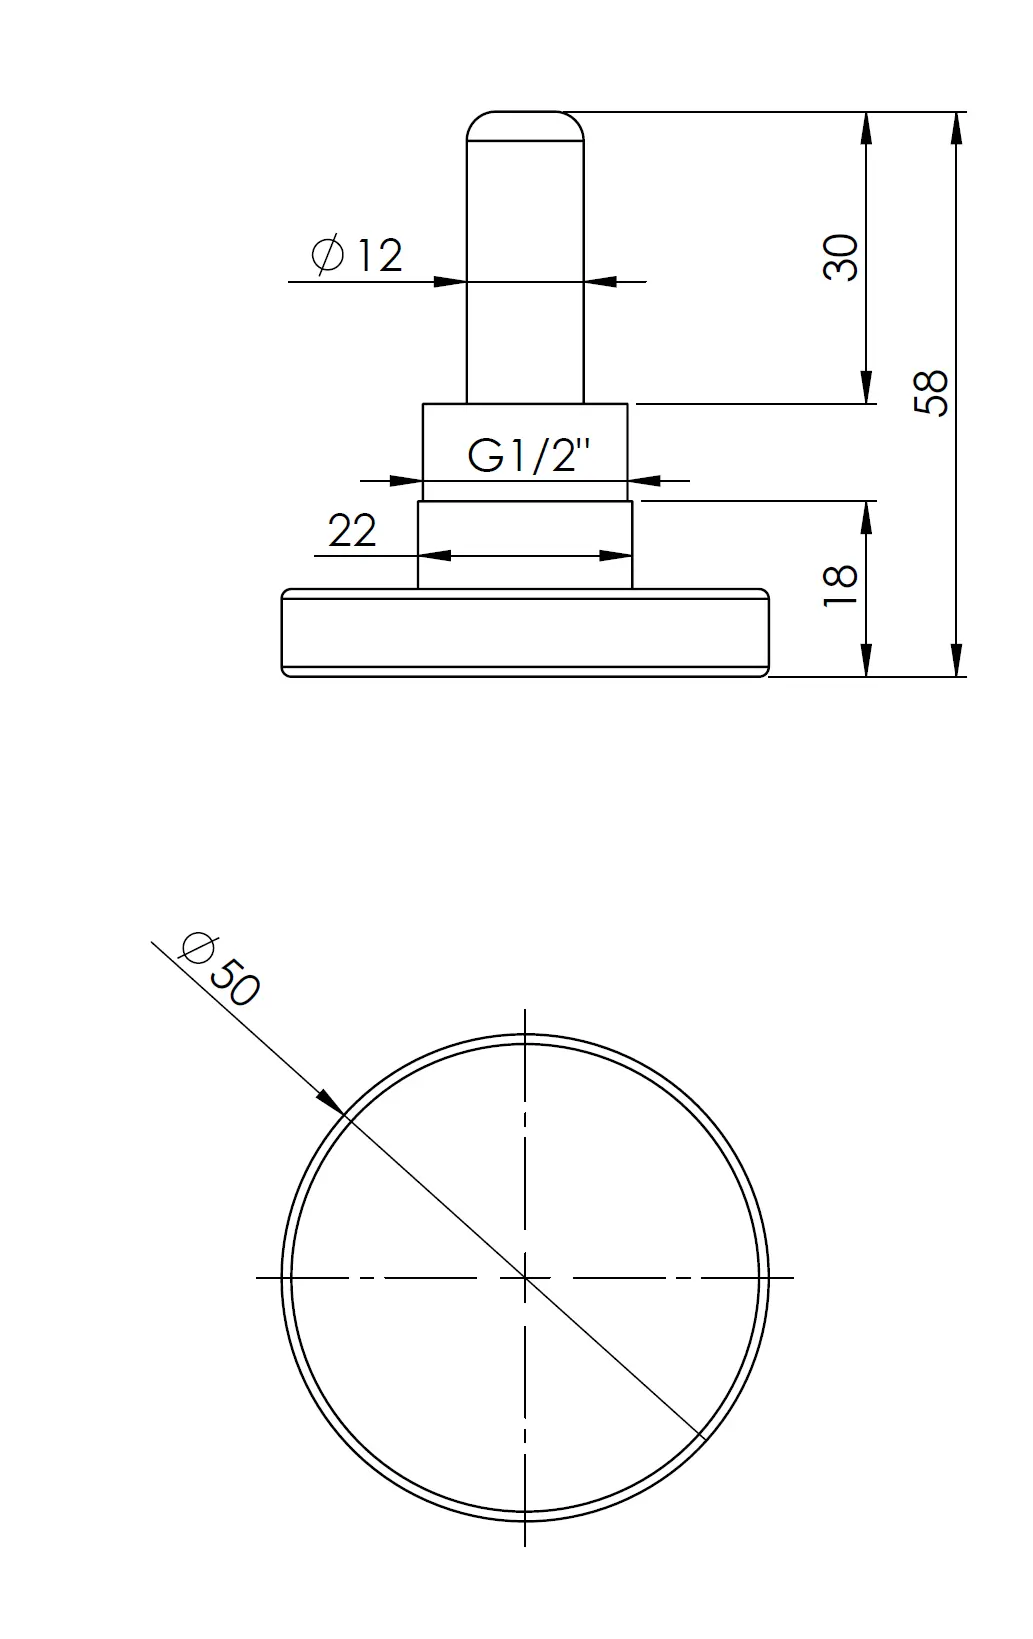 Termometr bimetaliczny BiTh 50, fi50 mm, 0÷60°C, L 40 mm, G1/2", ax, kl. 2 - budowa